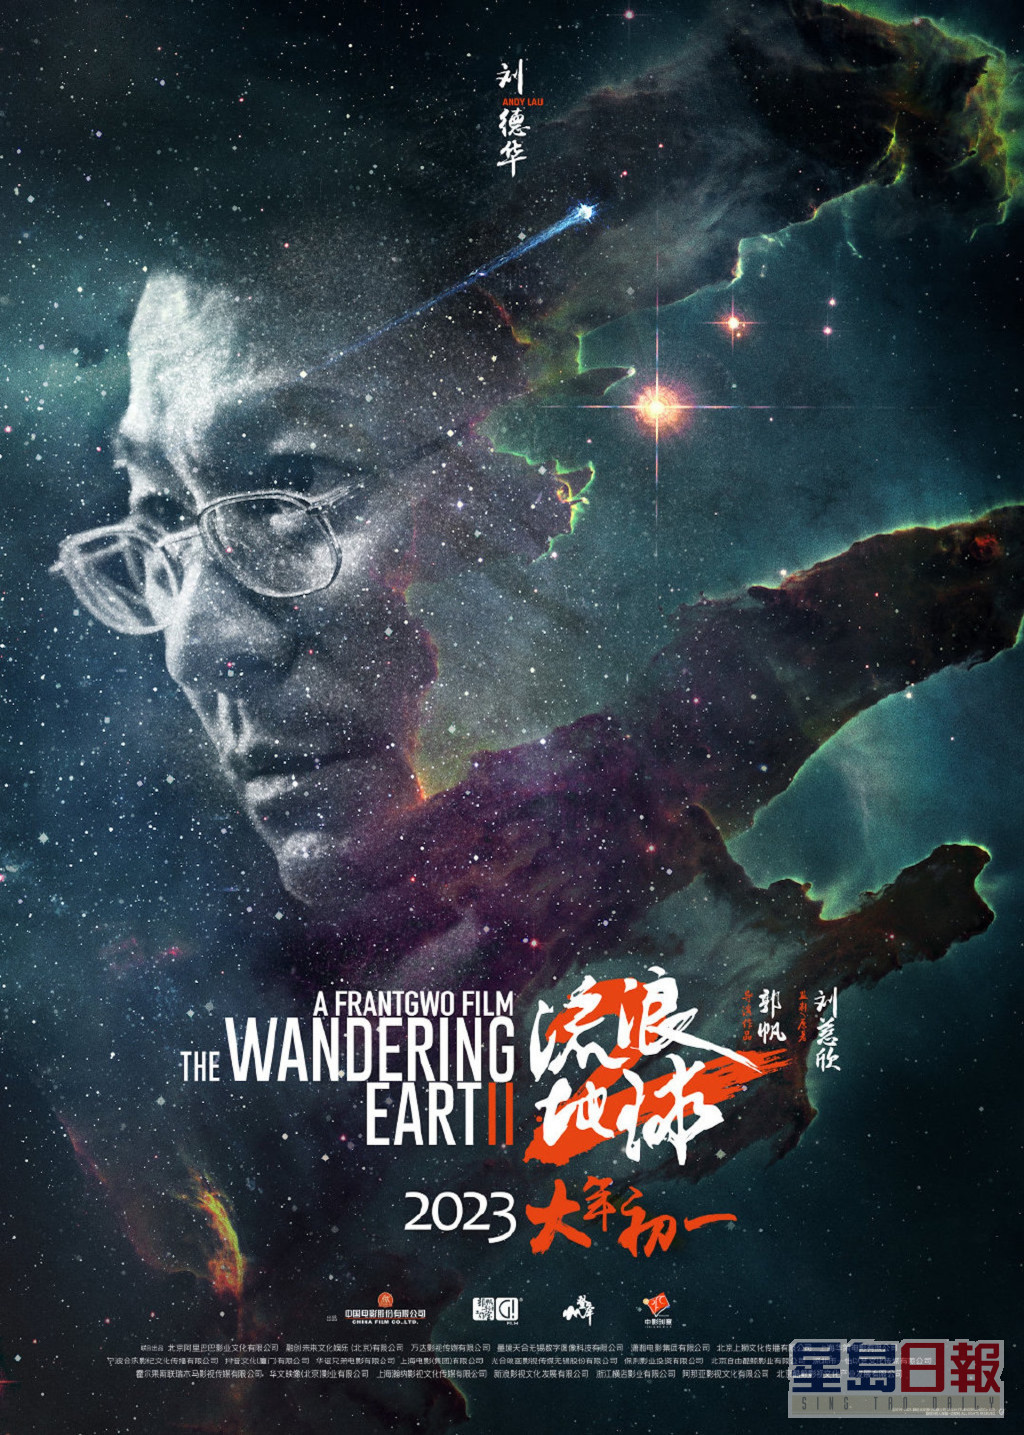 刘德华主演的科幻电影《流浪地球2》于大年初一在内地上映。